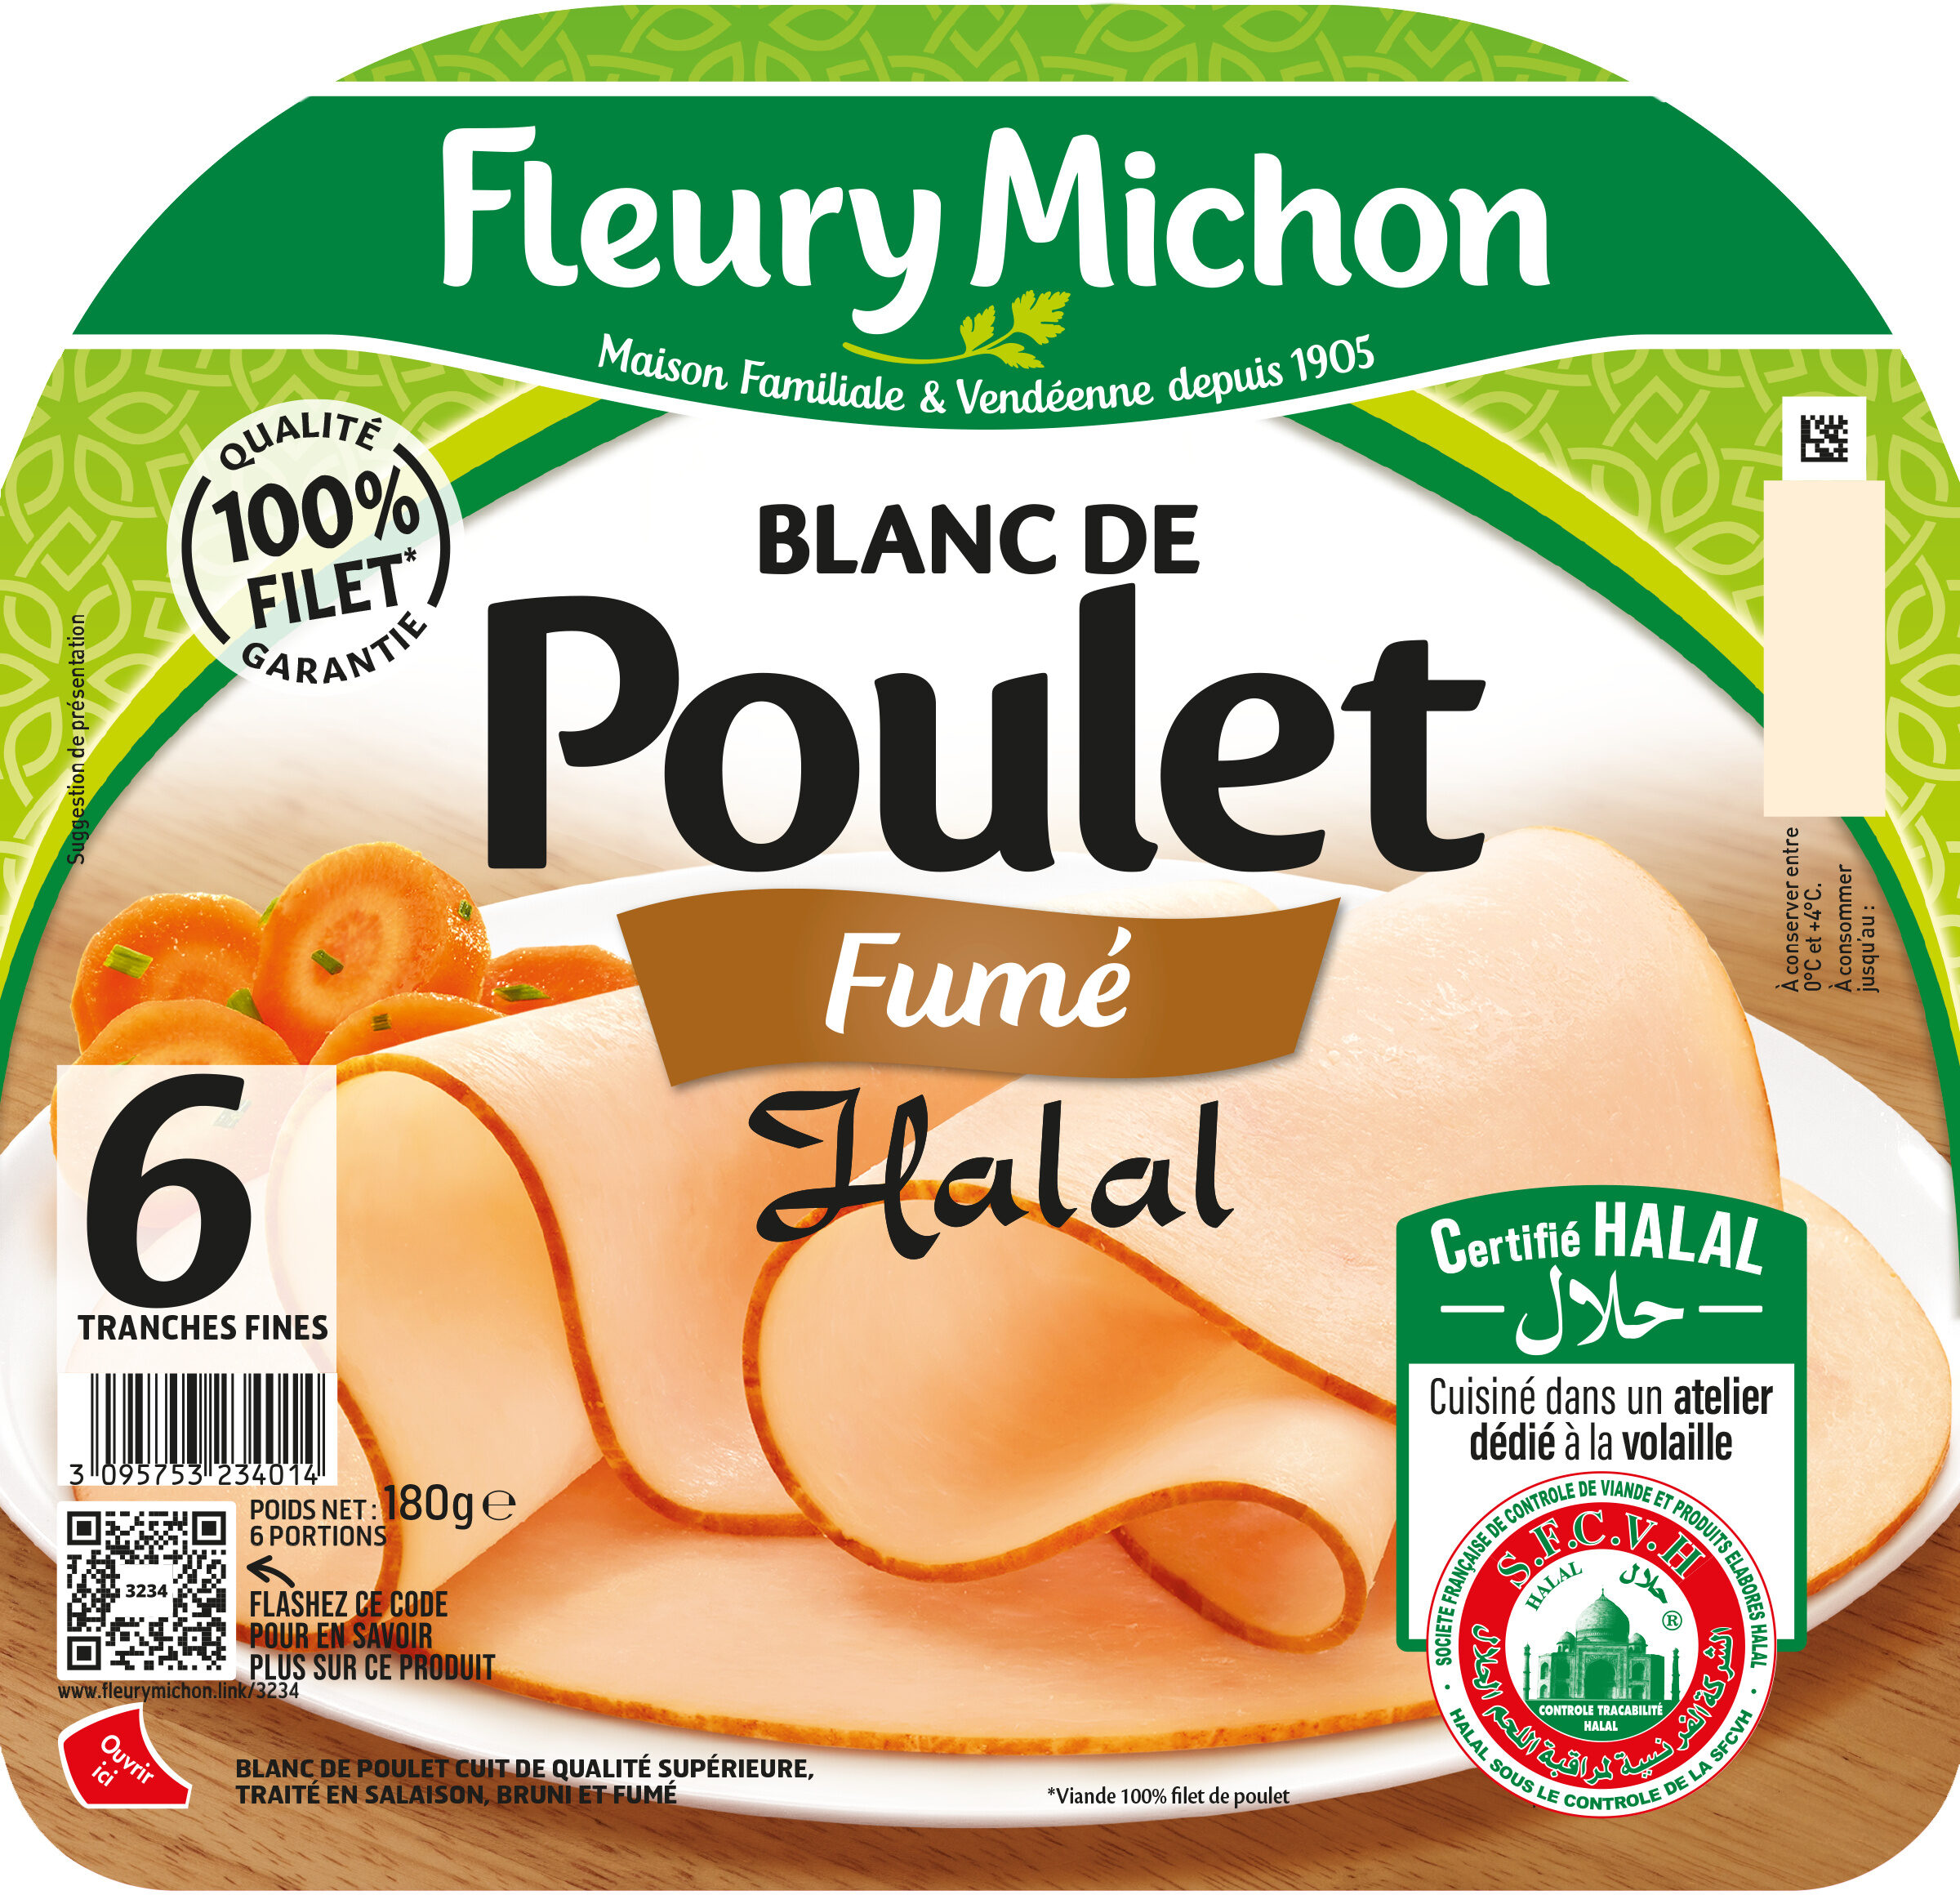 Blanc de Poulet - Fumé - Halal - Product - fr